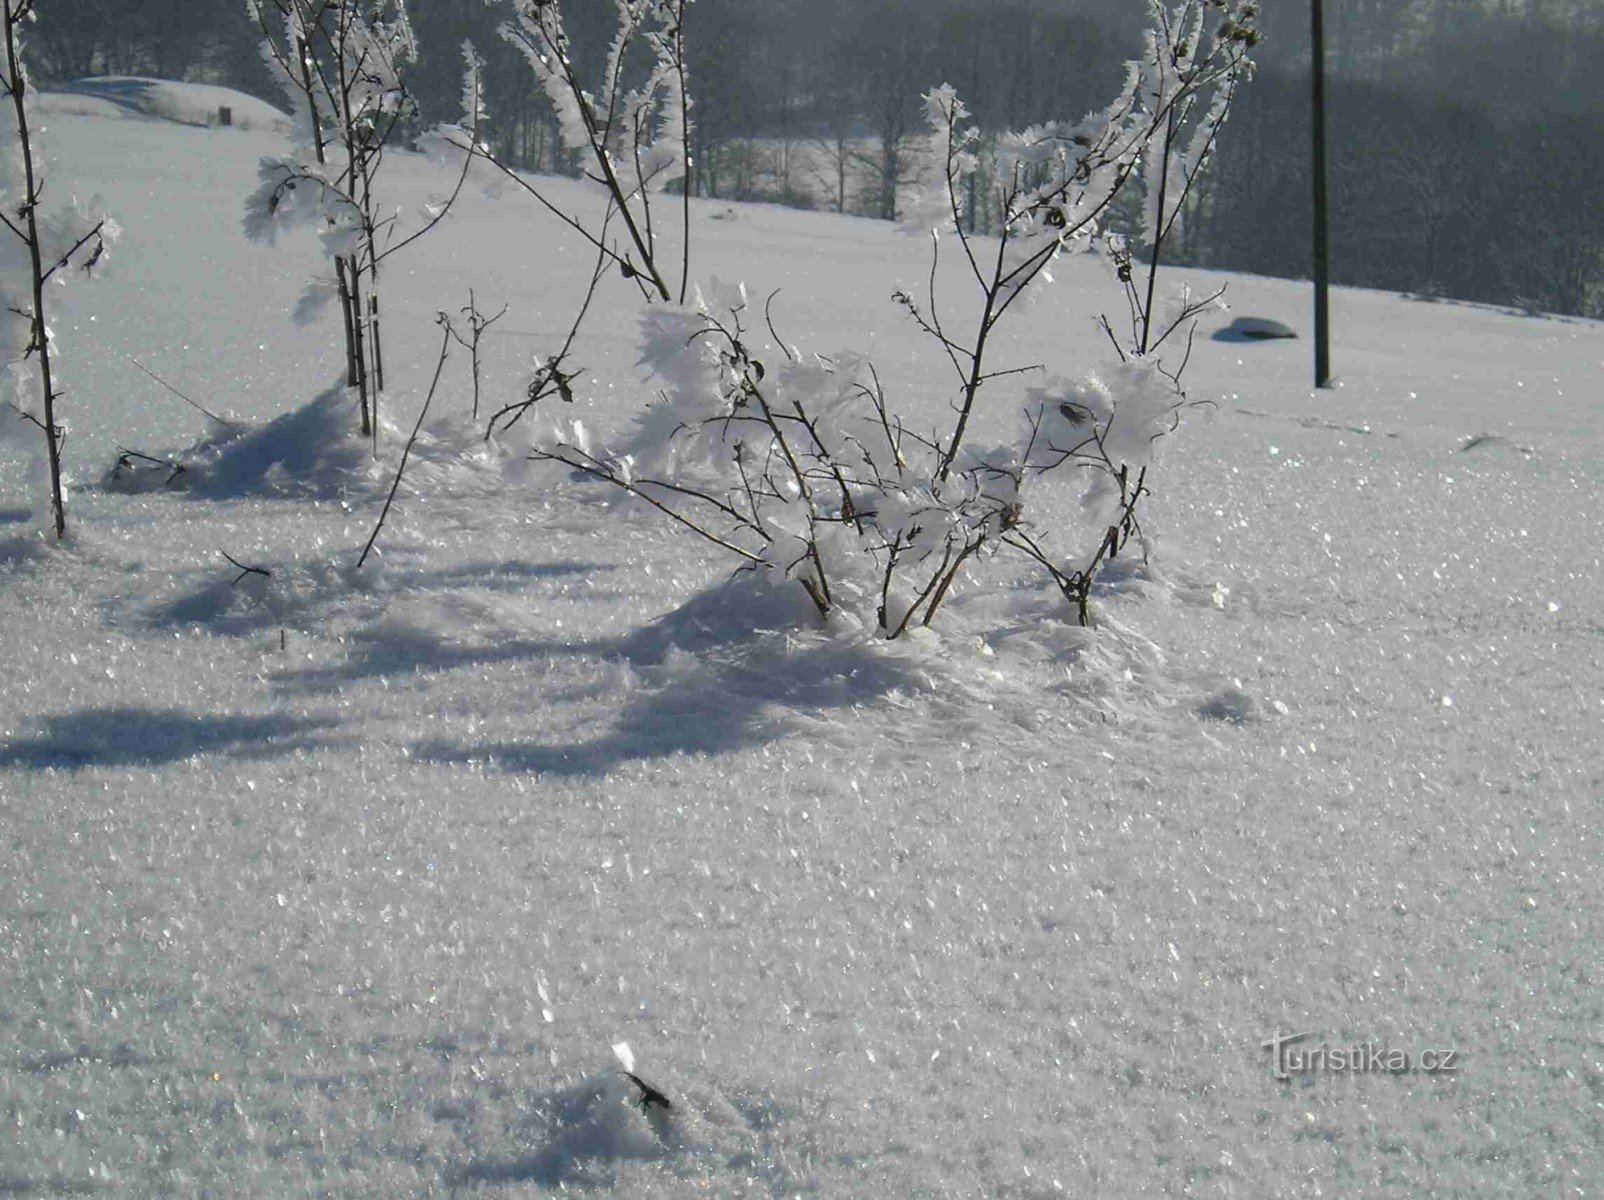 Górno leszna på vintern, särskilt under Wróžno-kullen